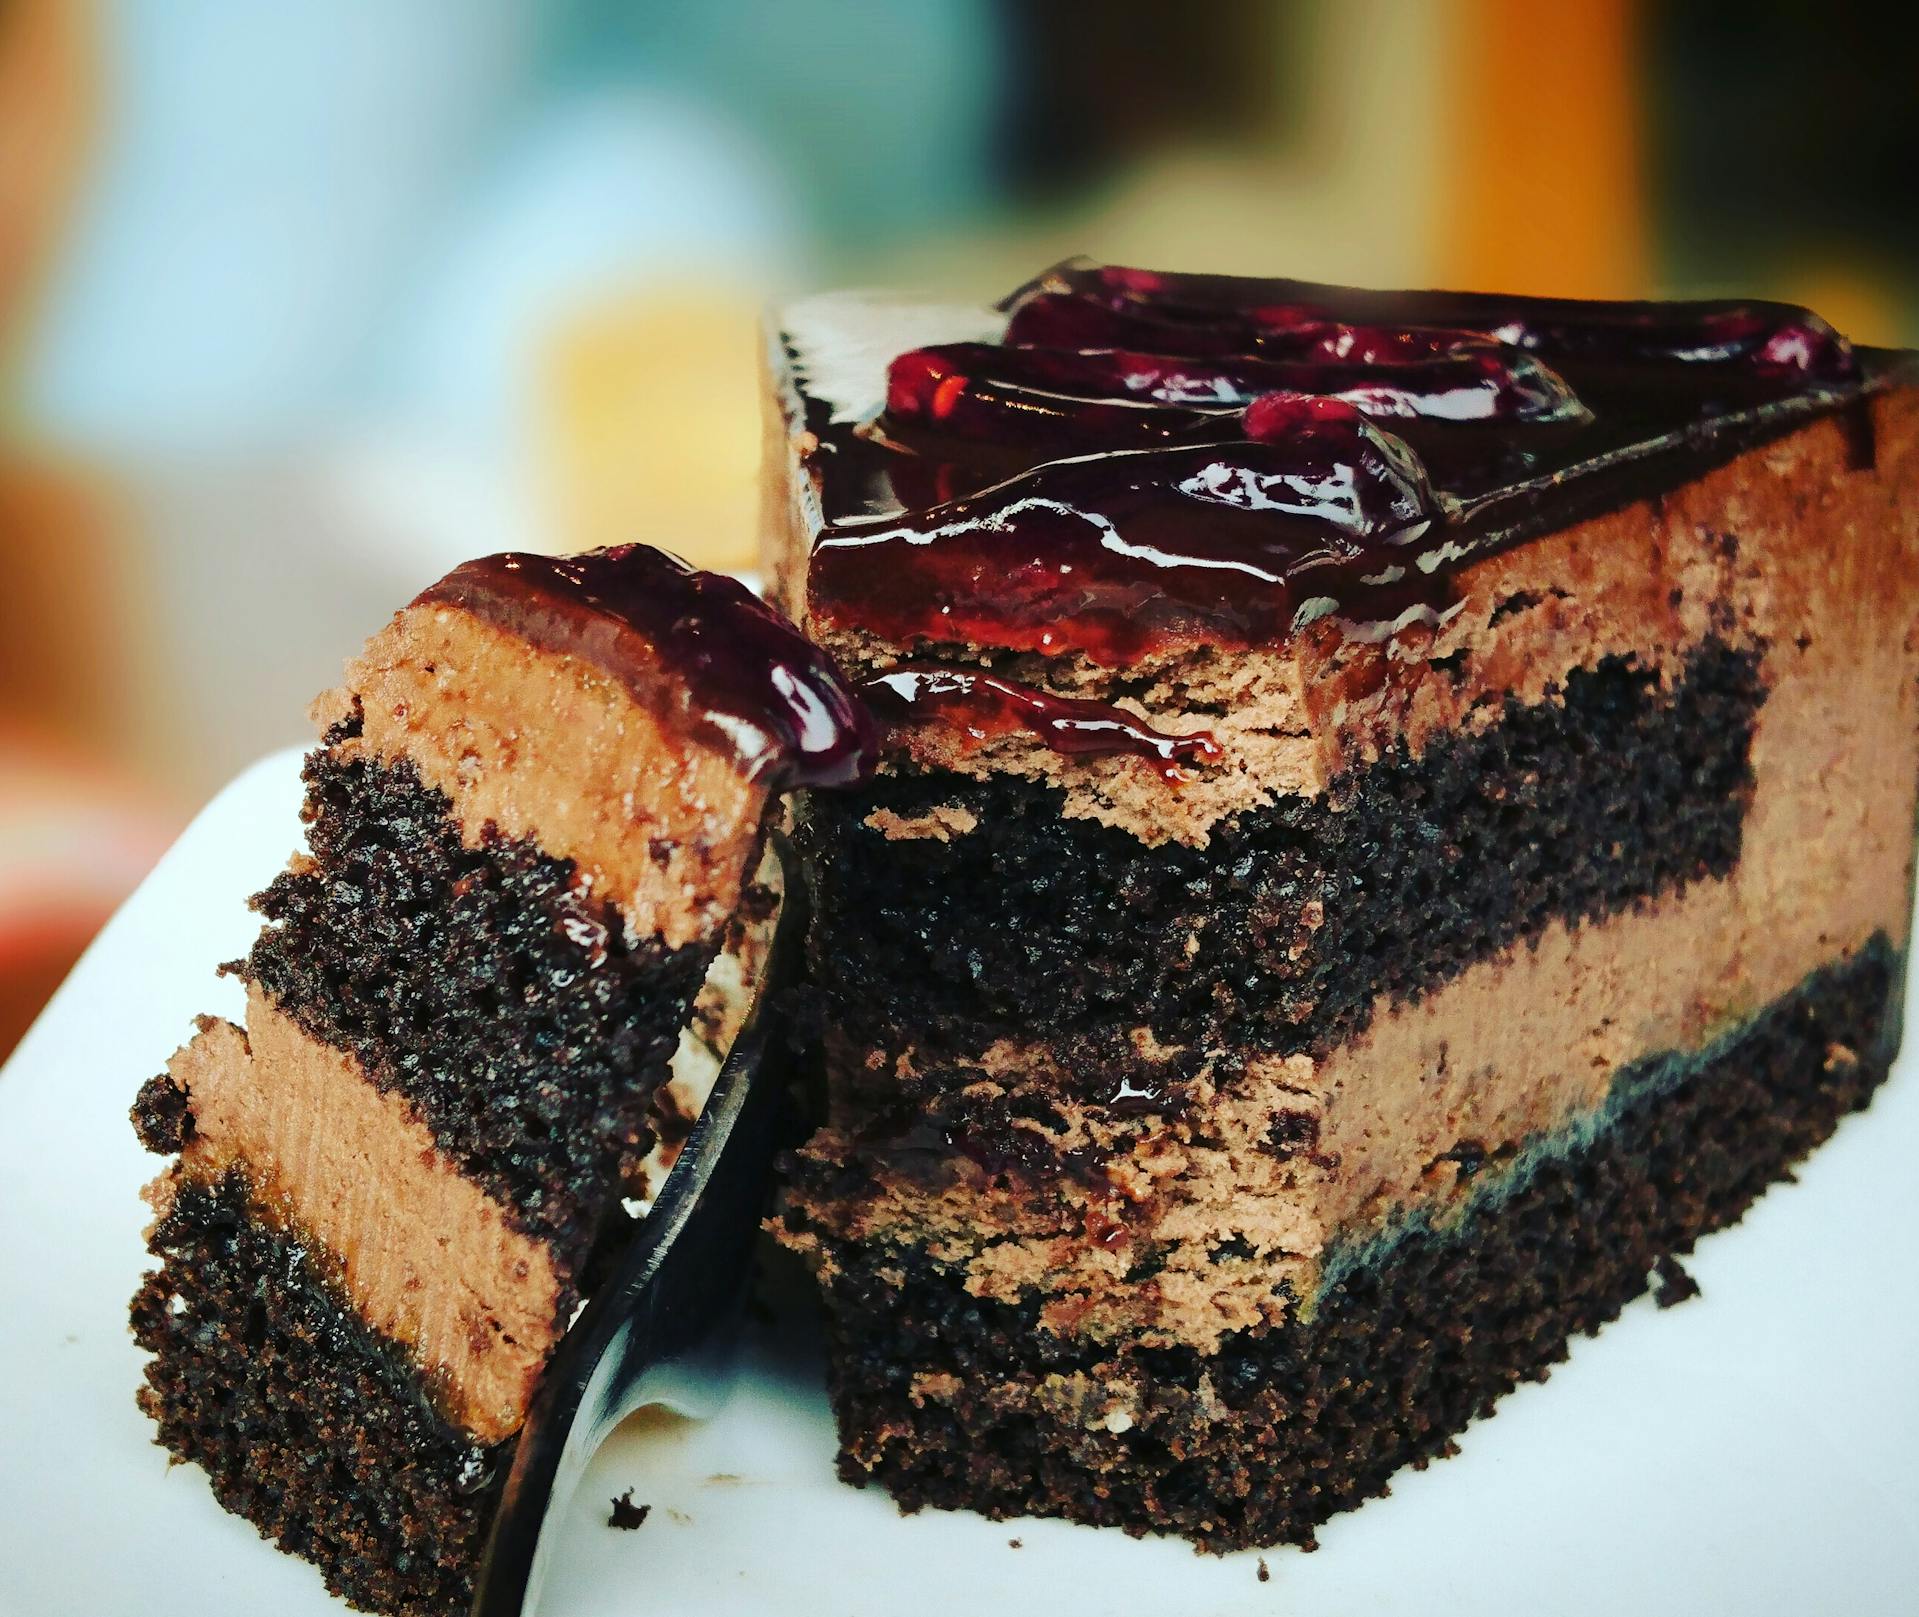 Une tranche de gâteau | Source : Pexels